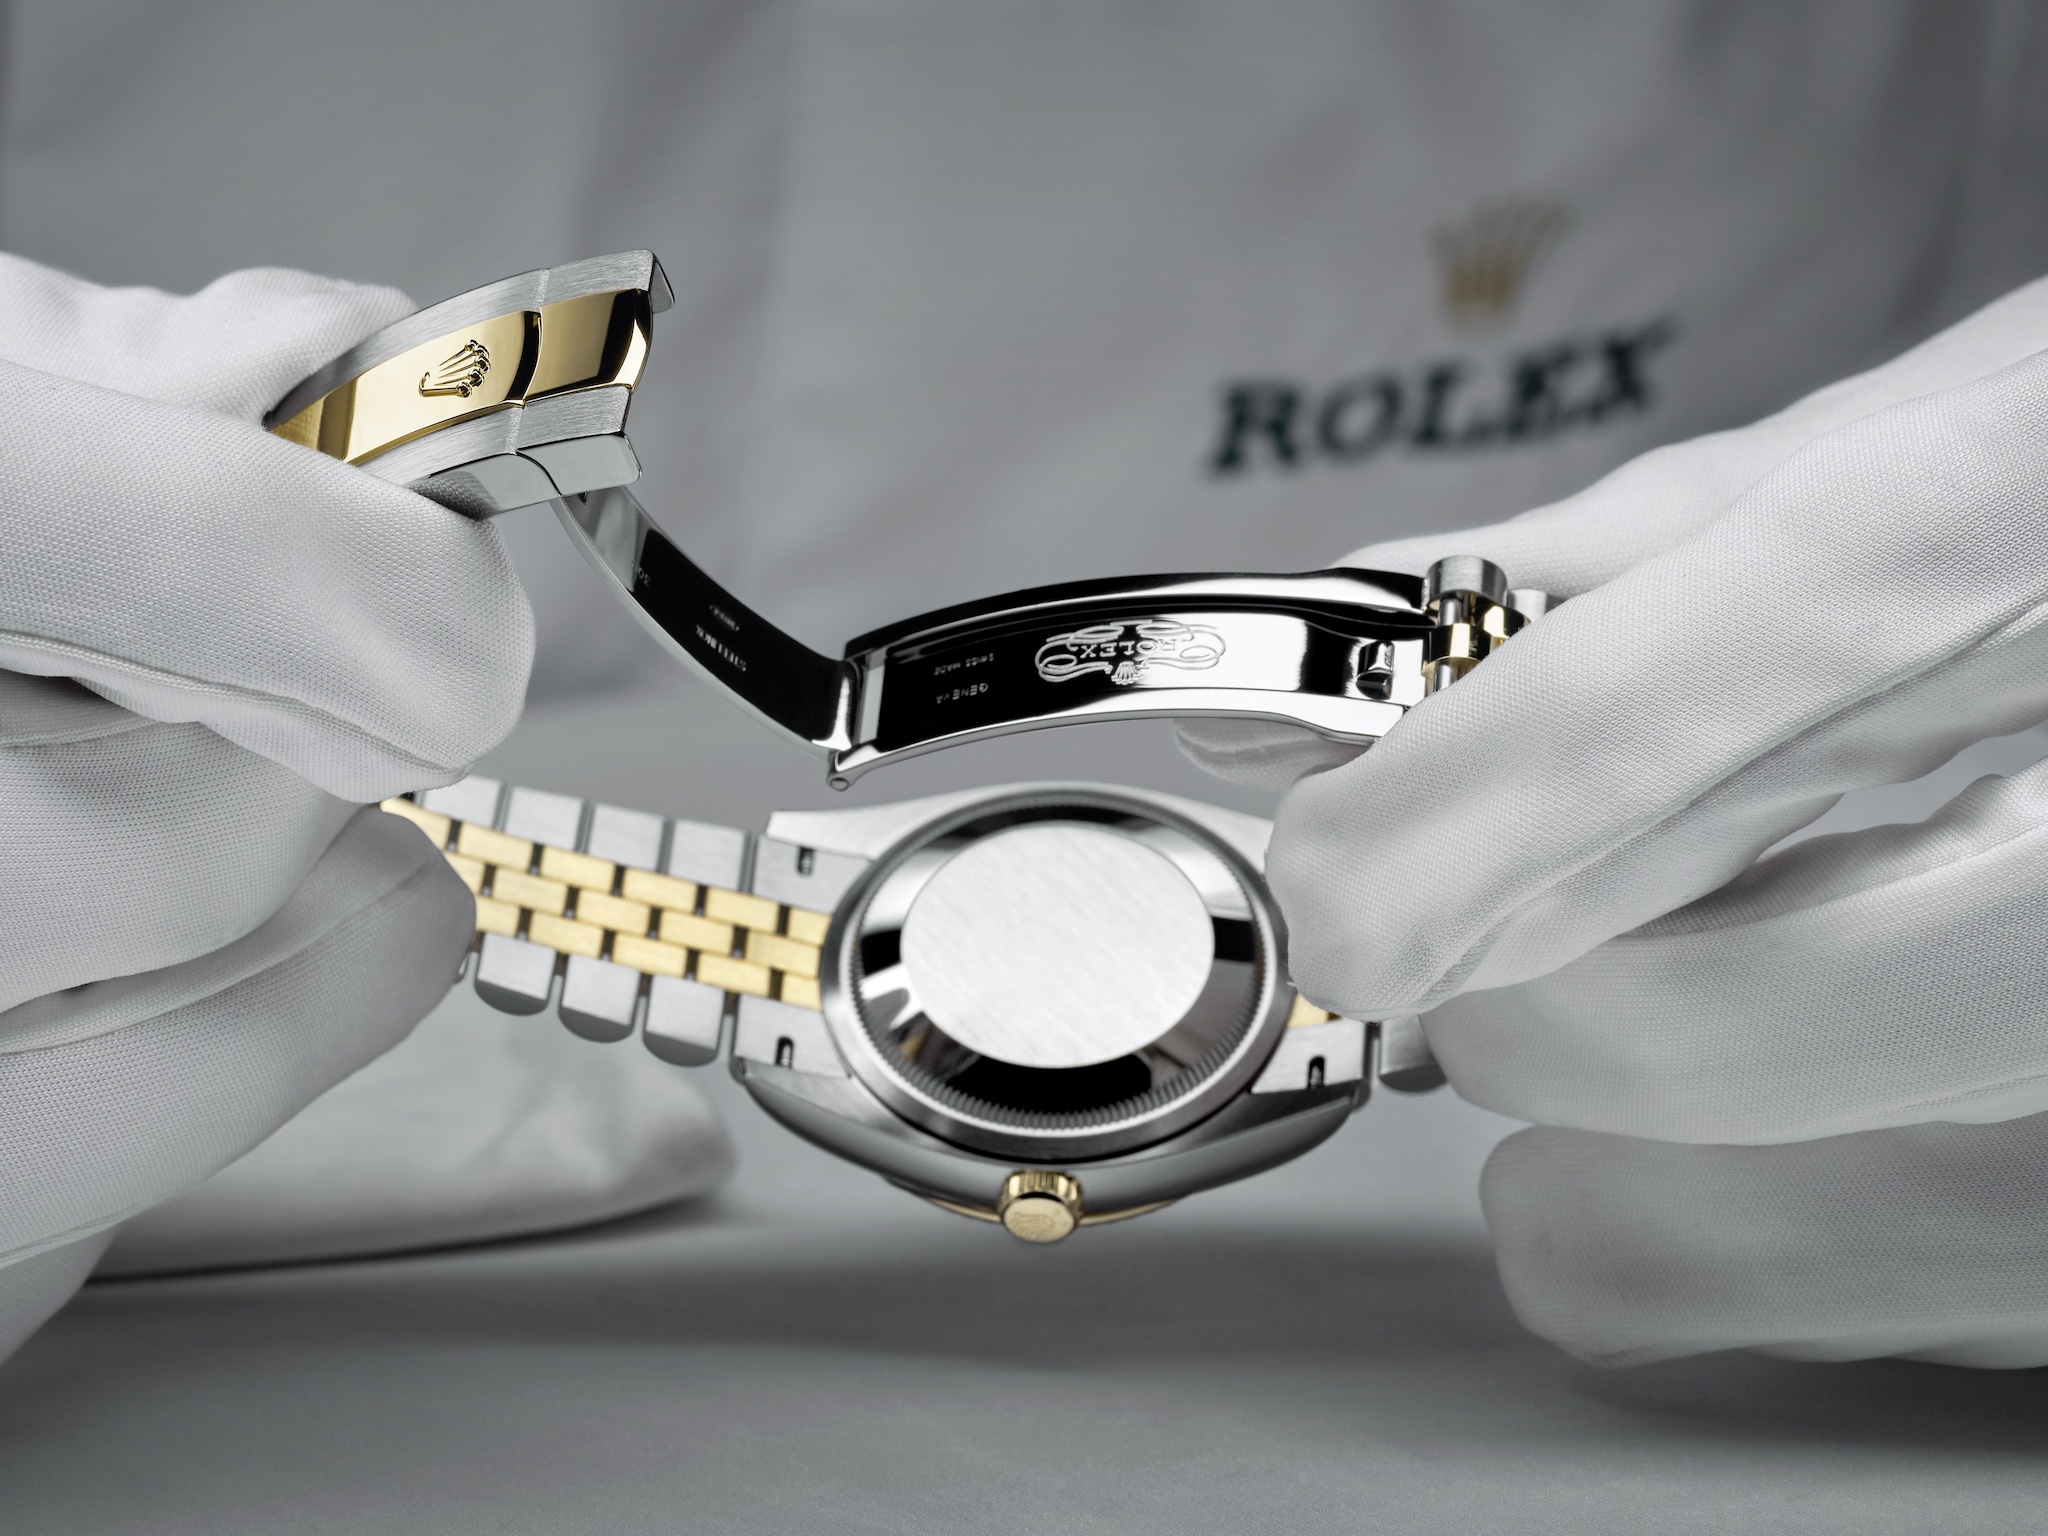 Rolex world service